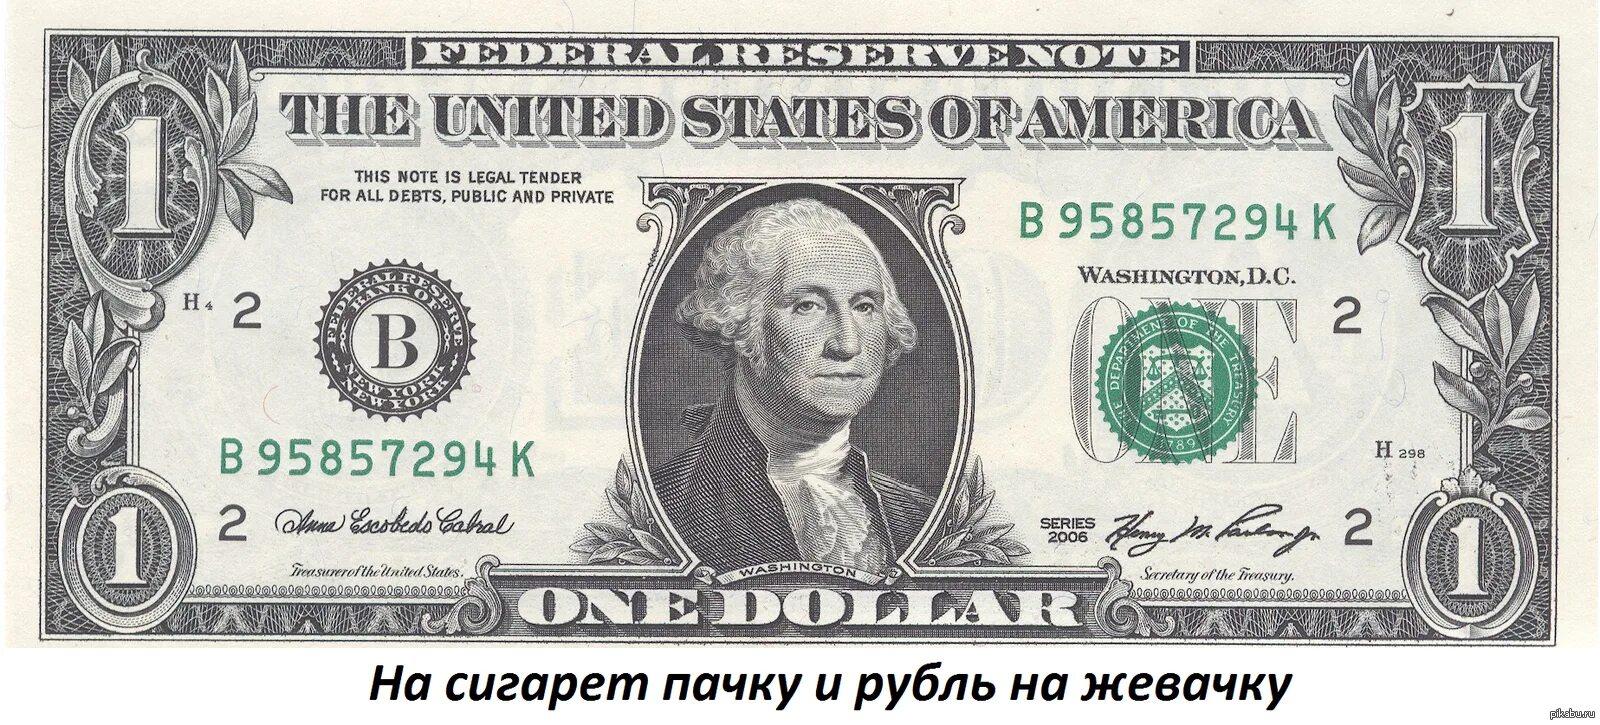 Однодолларовая купюра Джордж Вашингтон. Джордж Вашингтон на купюре. 1 Доллар США. Купюра 50 долларов США.